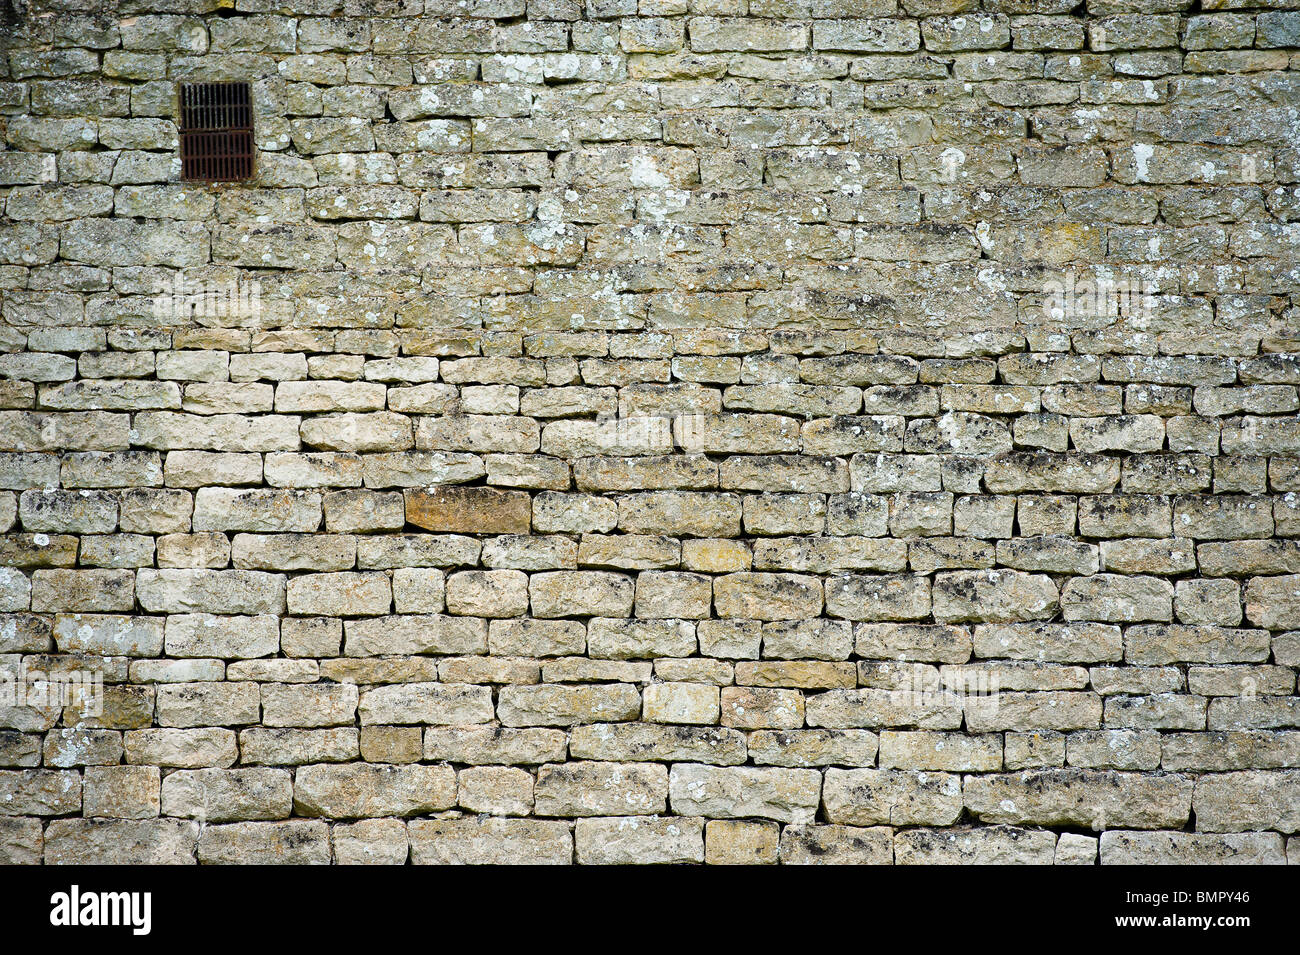 Dry stone wall Stock Photo